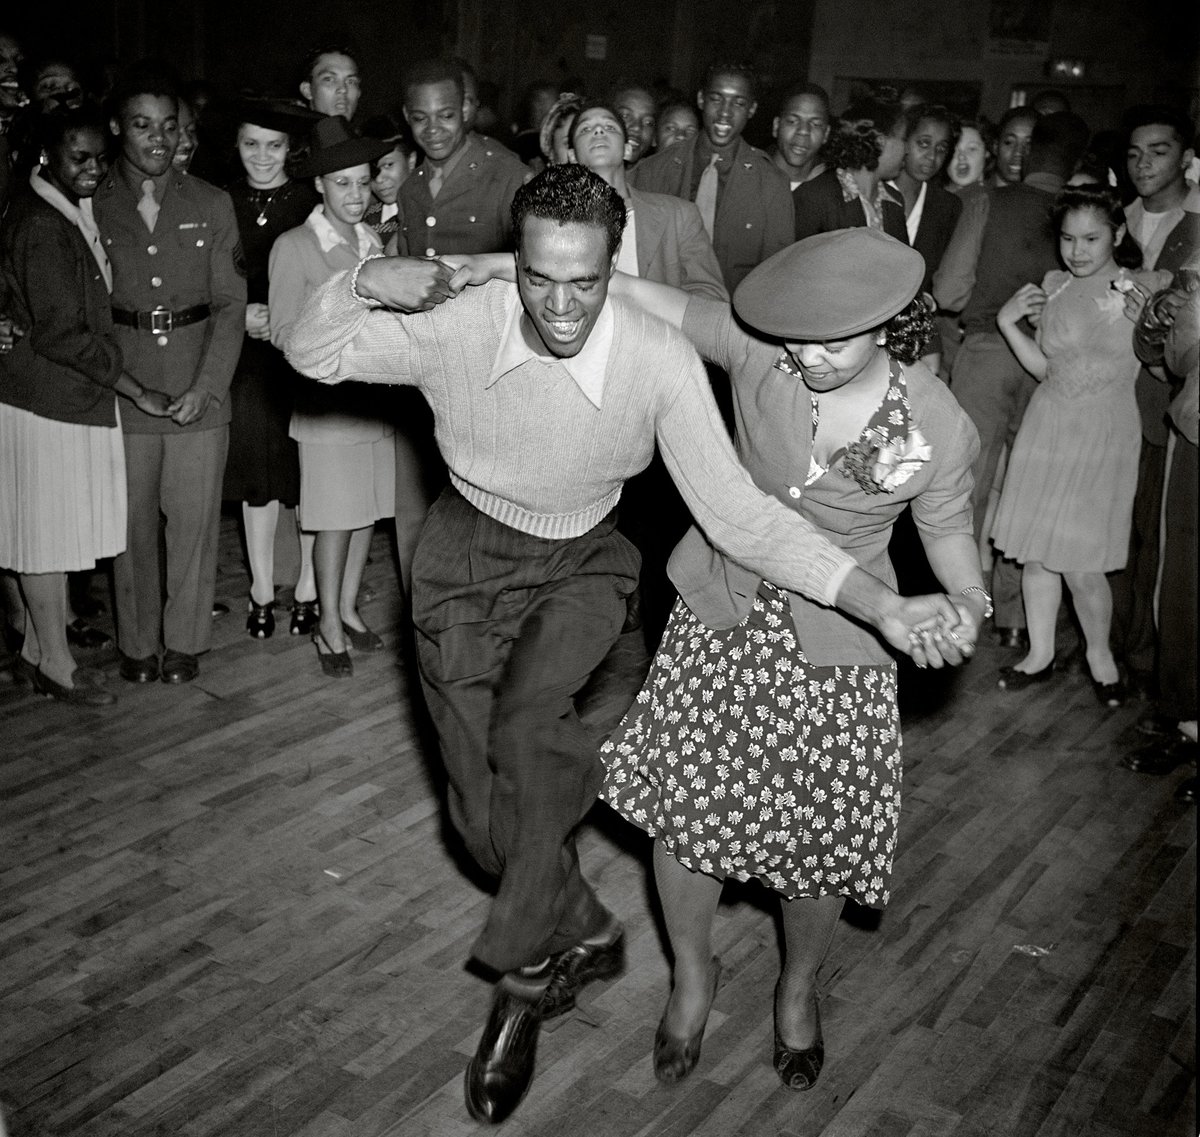 @errikorn Ti rifaccio la domanda, rispondi con sì o no: mentre questi afroamericani ballavano e si divertivano, il regime di apartheid scompariva magicamente? 😍
O forse le persone possono avere piccole gioie quotidiane anche sotto un regime razzista?